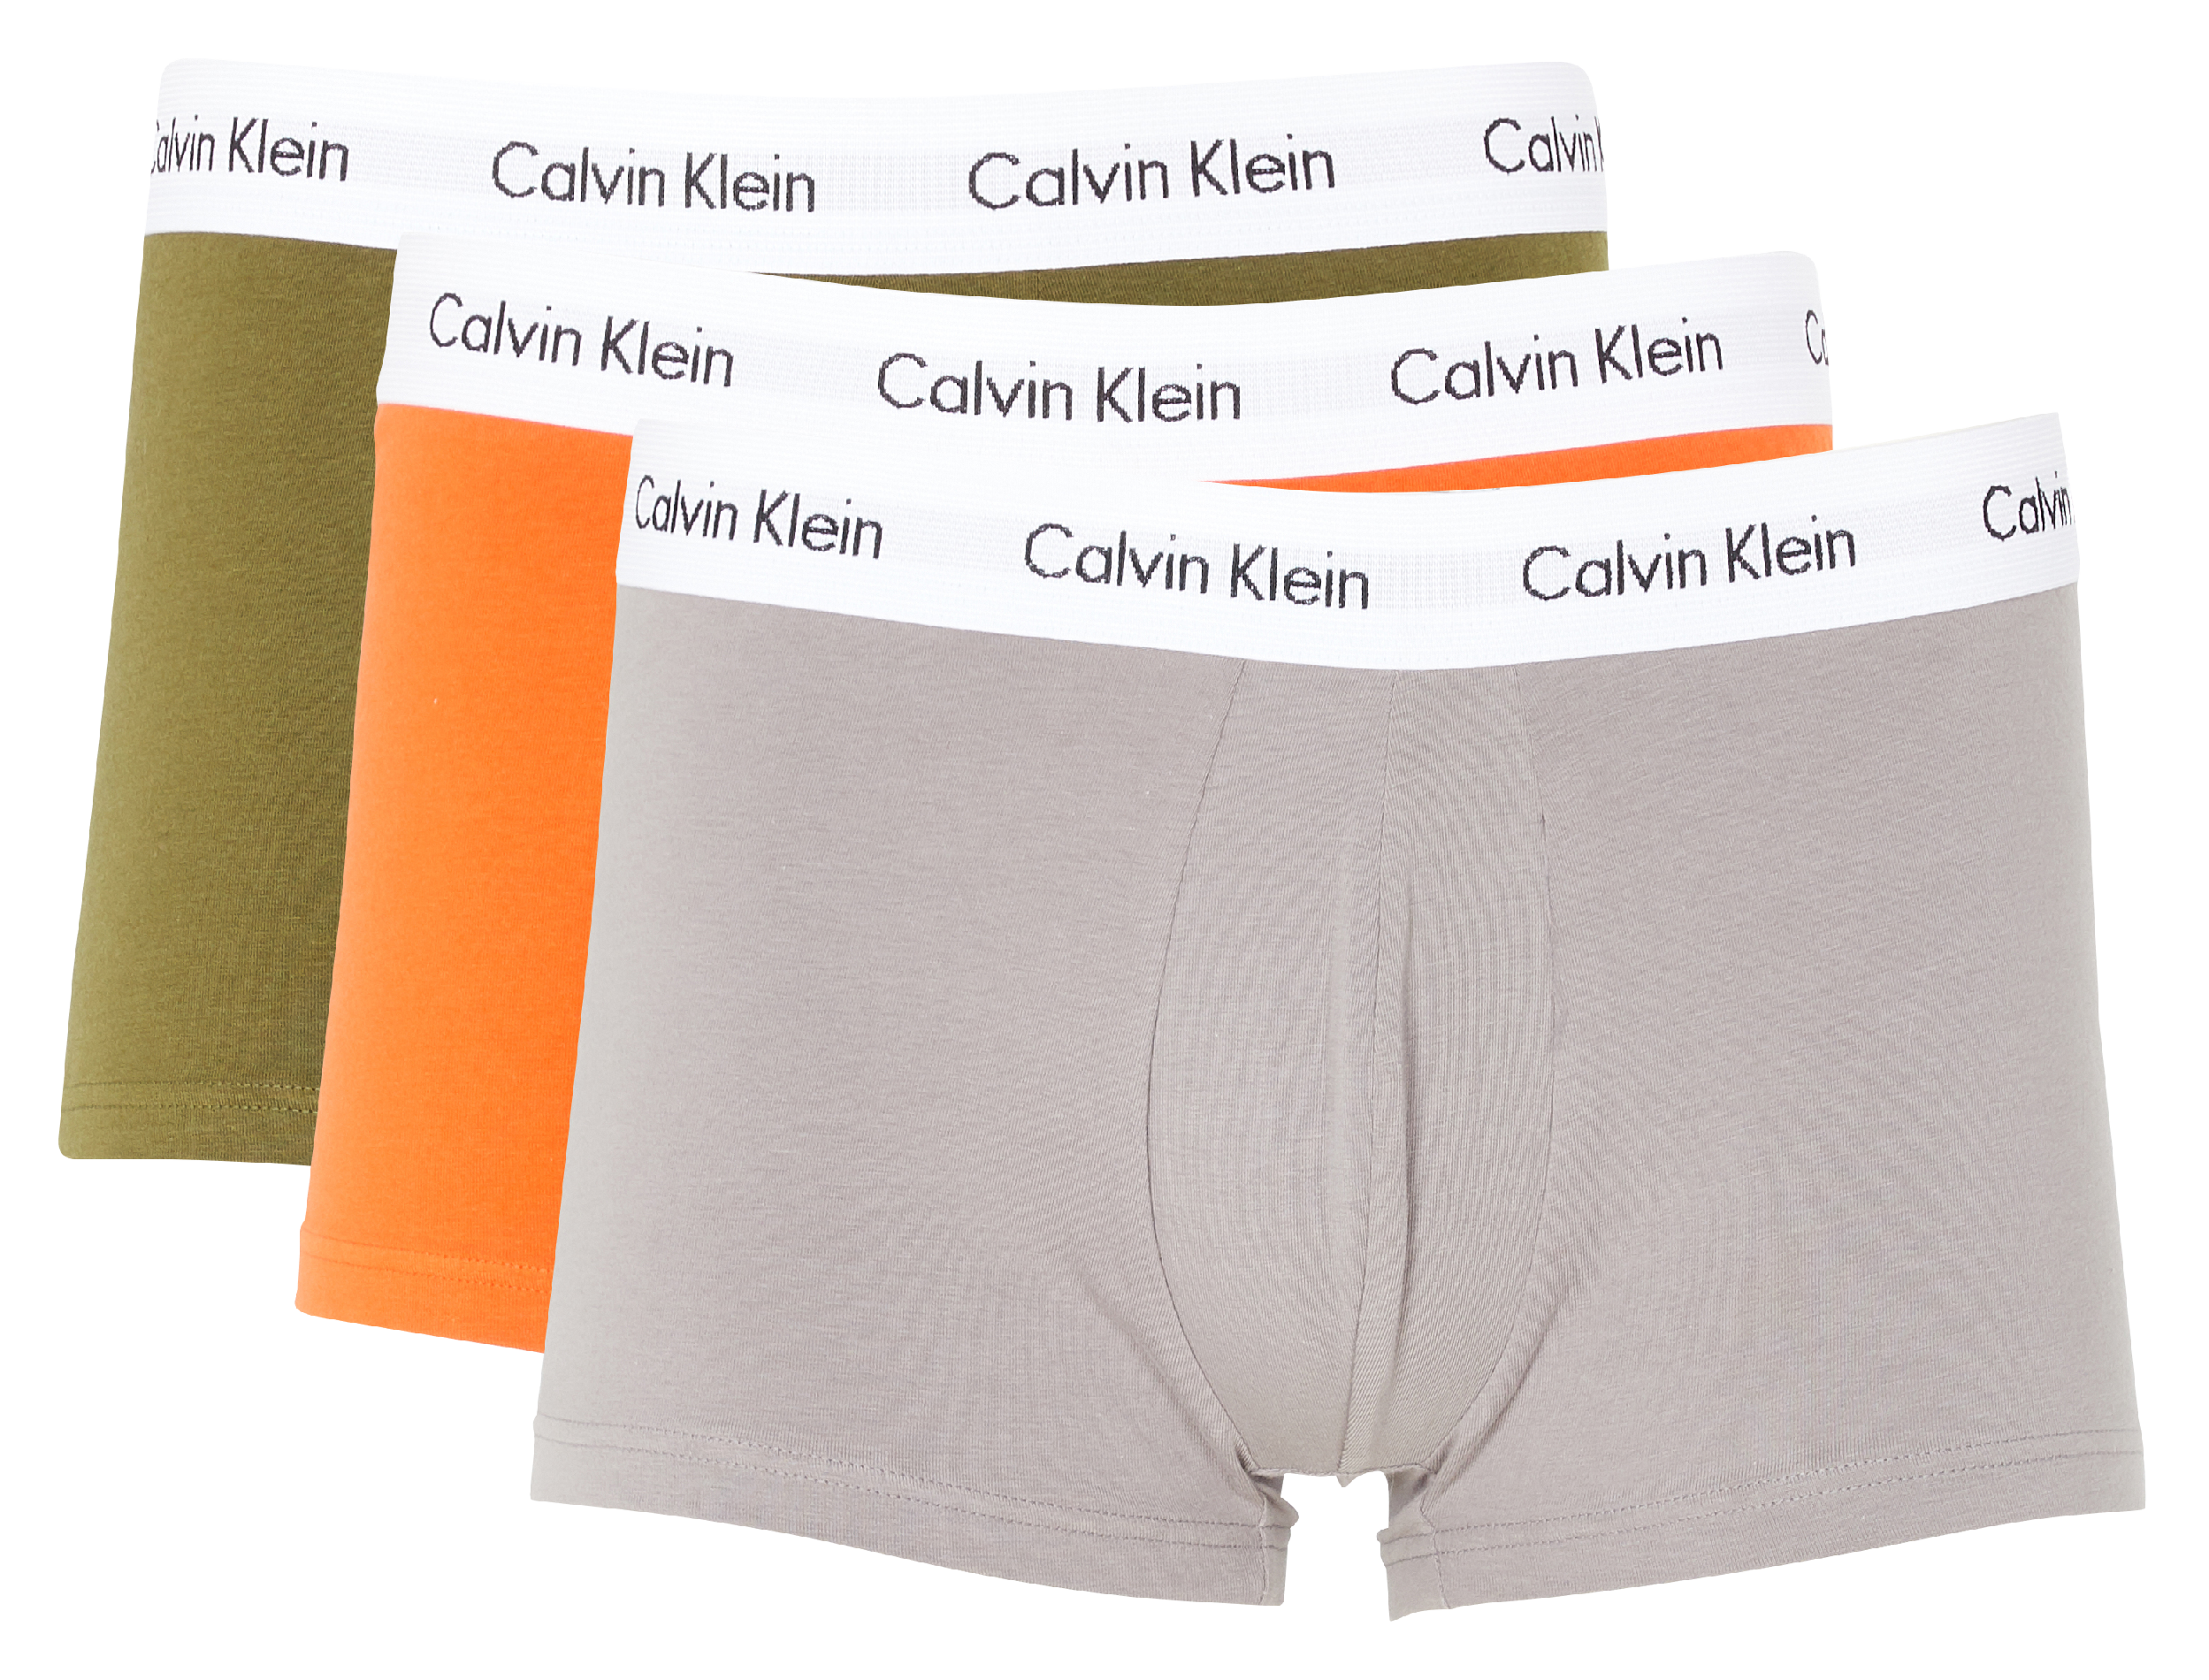 3 Slips Aus Baumwolle Mit Logo in Grau für Herren Calvin Klein Baumwolle Set Herren Bekleidung Unterwäsche Boxershorts und Slips 